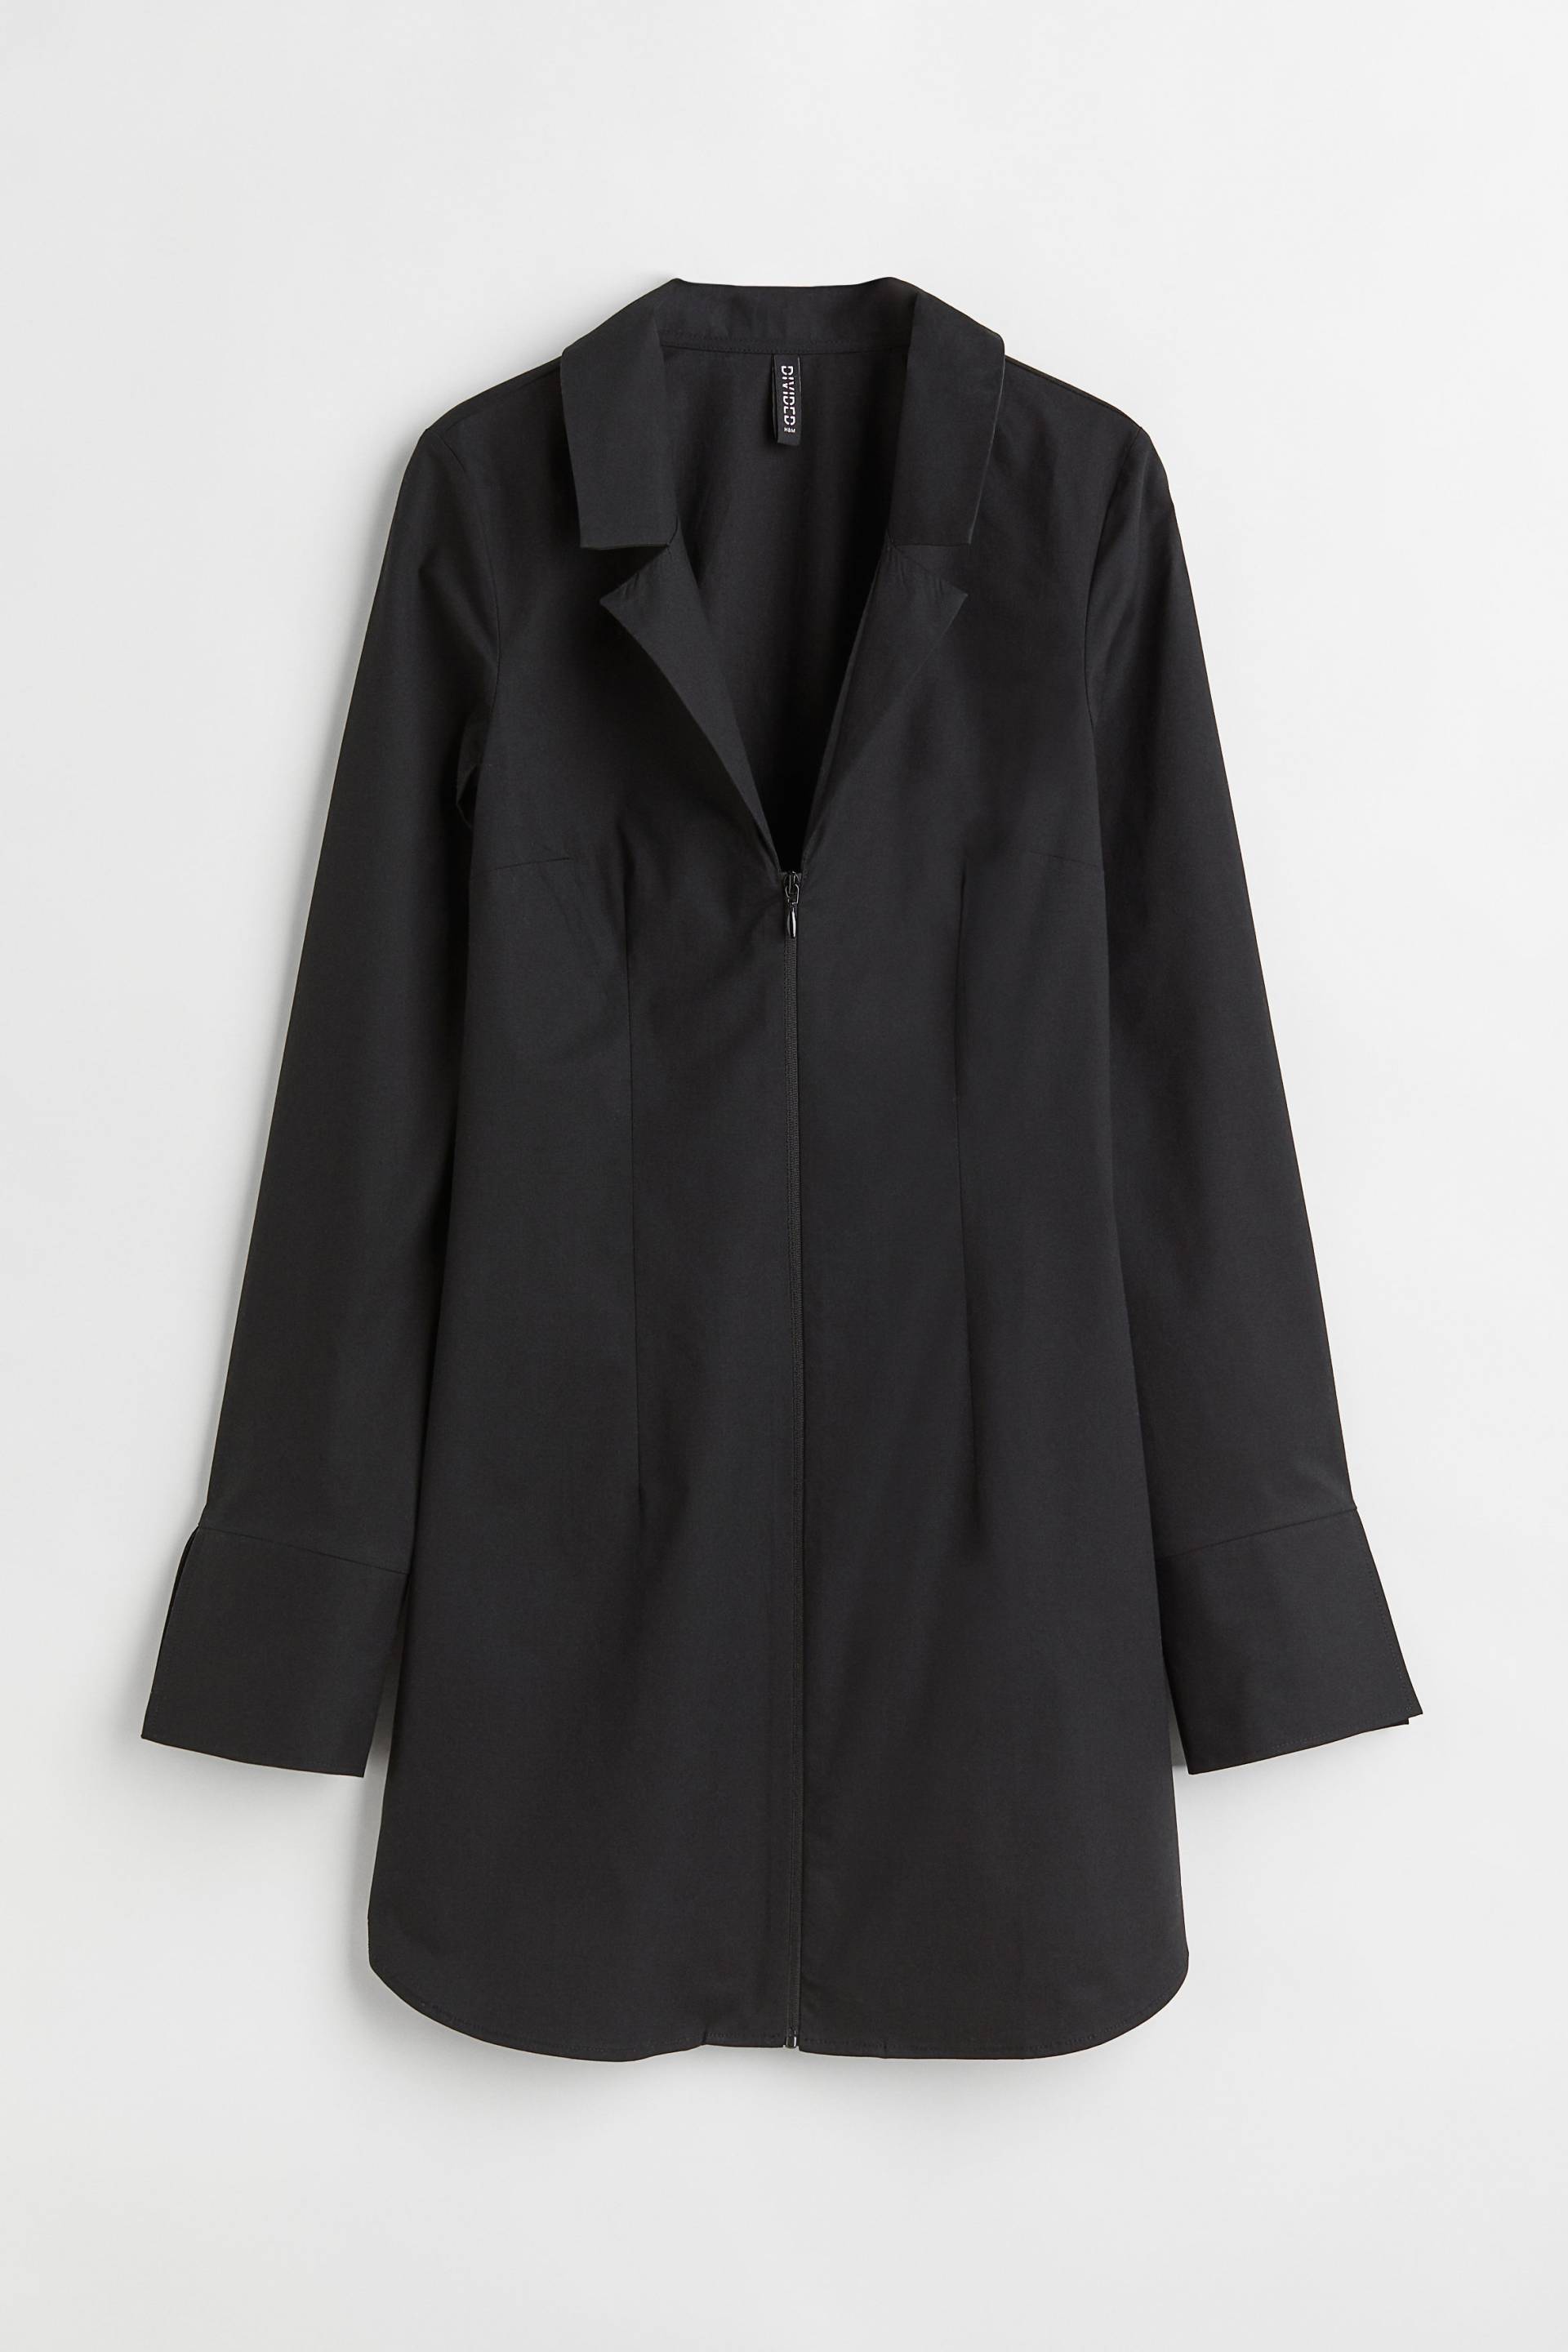 H&M Kurzes Blusenkleid Schwarz, Alltagskleider in Größe 32. Farbe: Black von H&M